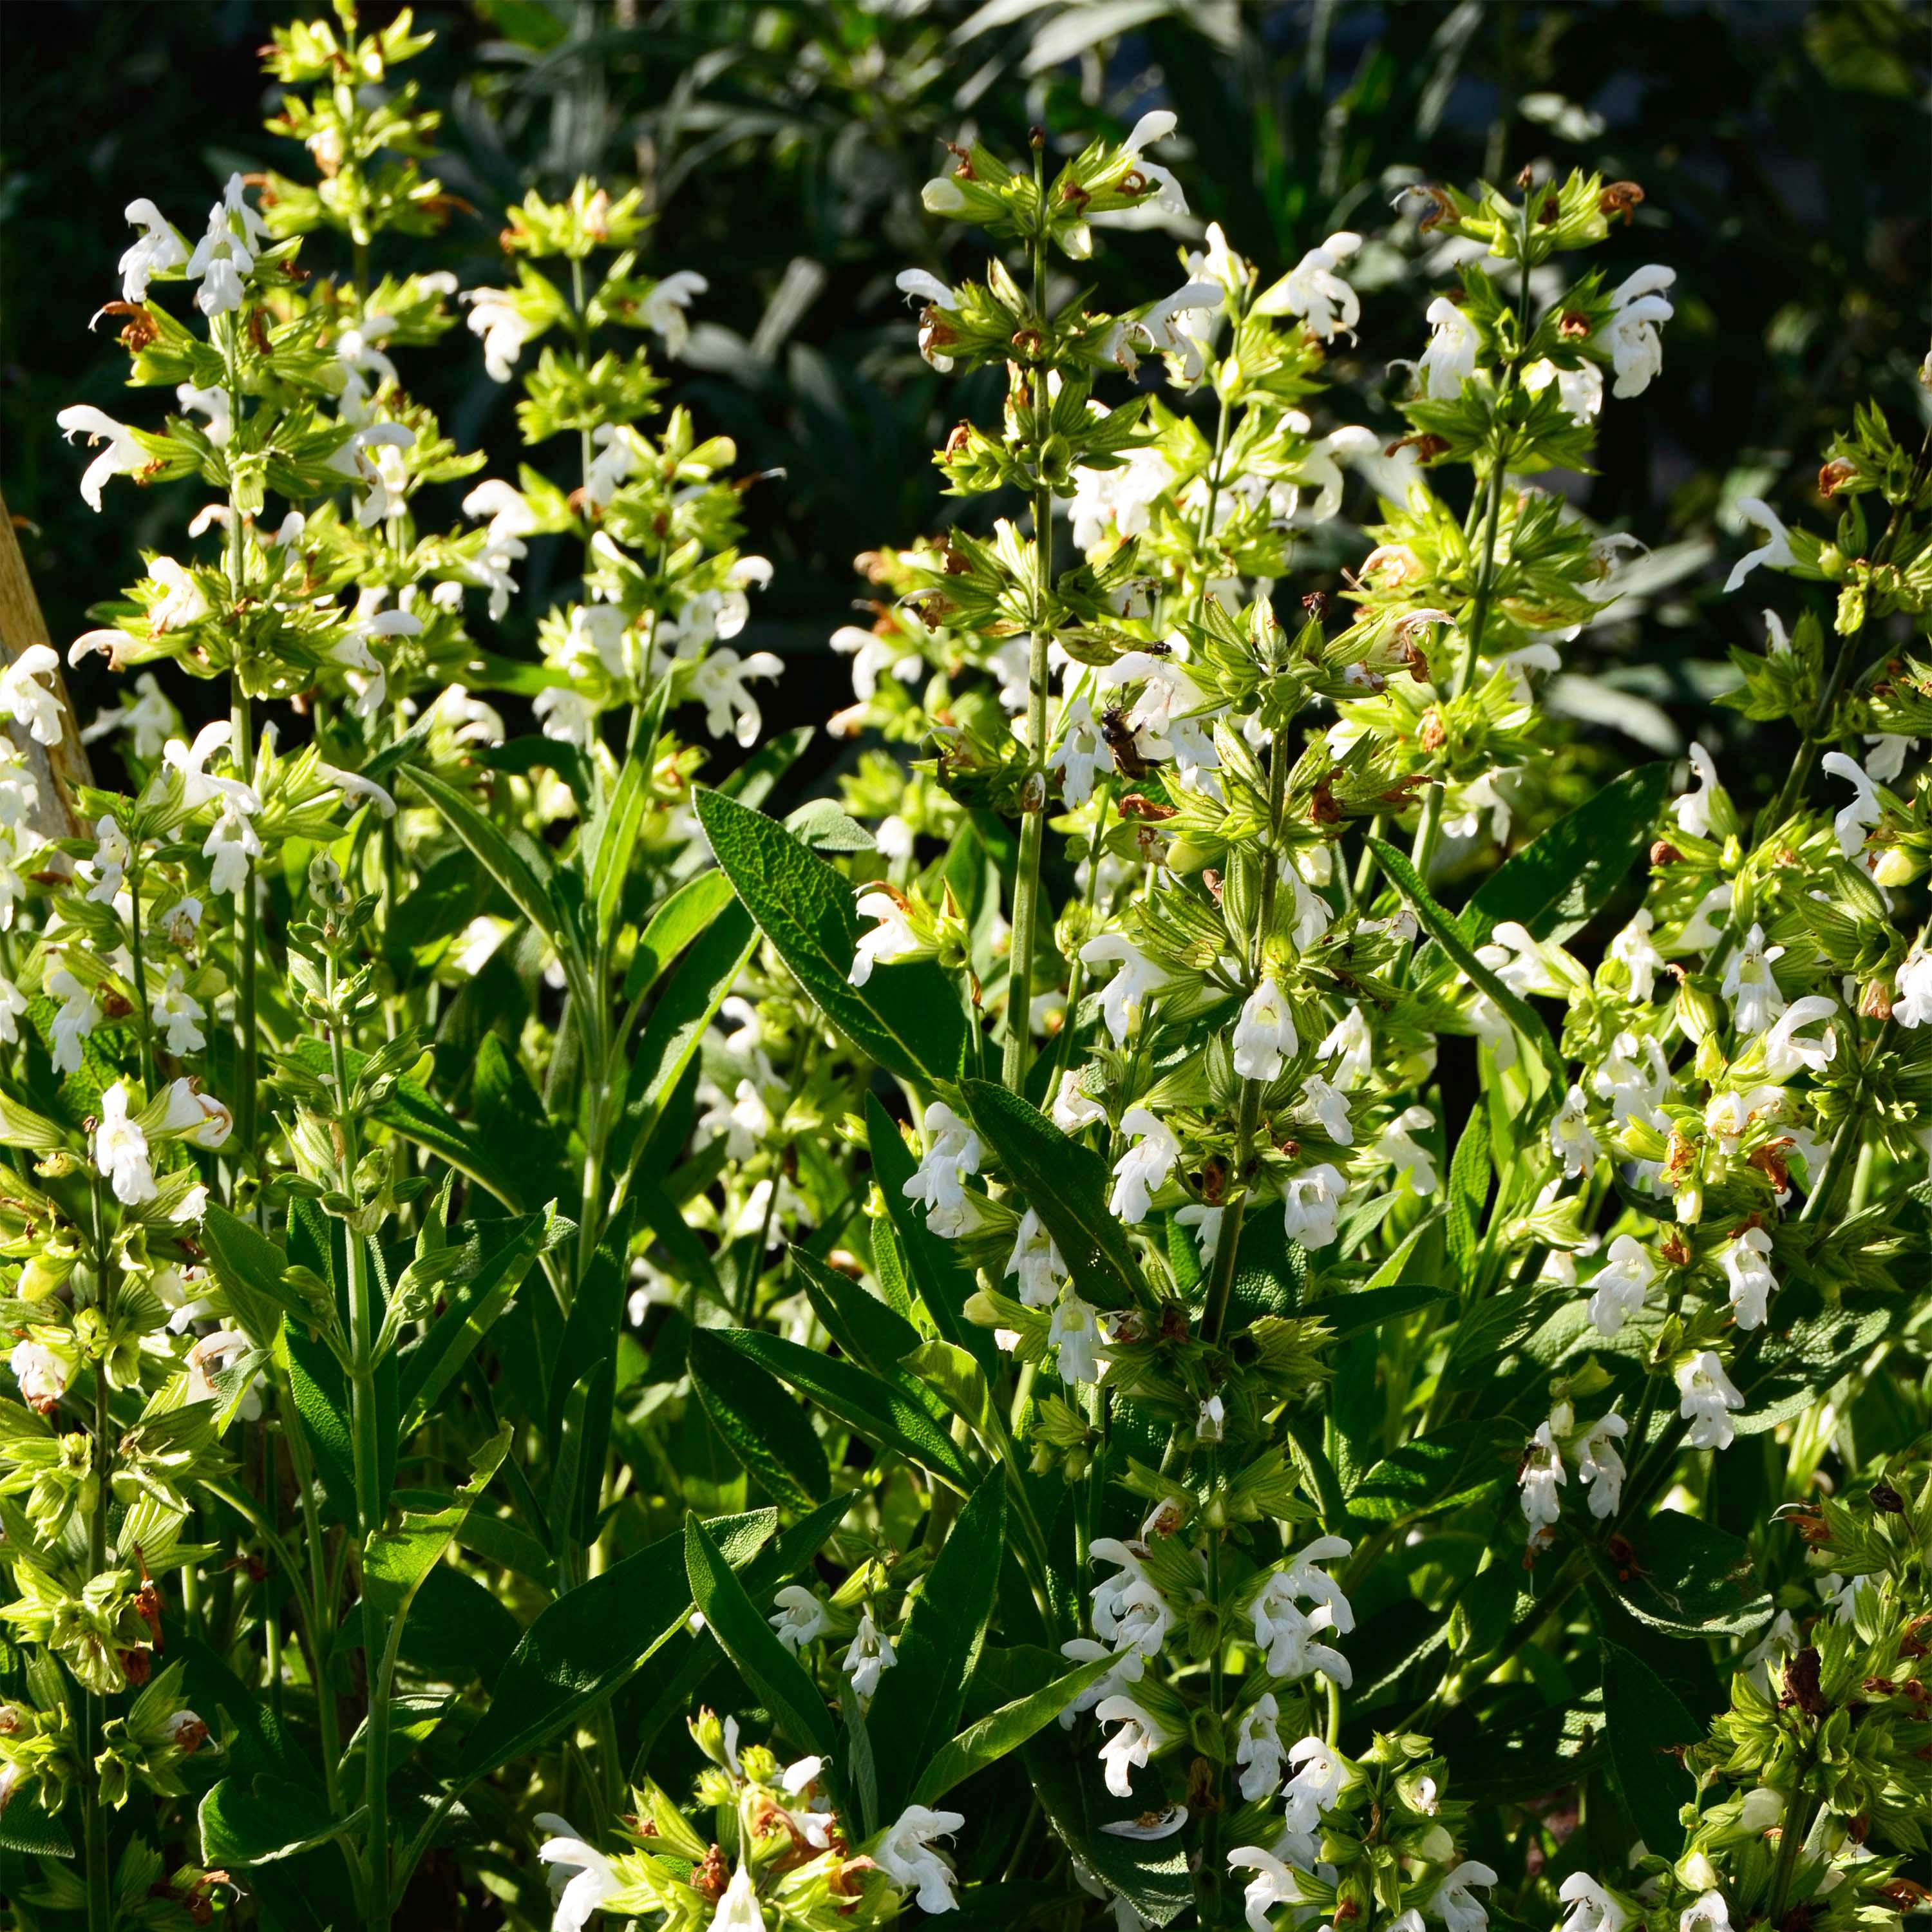 Sauge à fleur blanche condimentaire - Salvia officinalis 'Albiflora